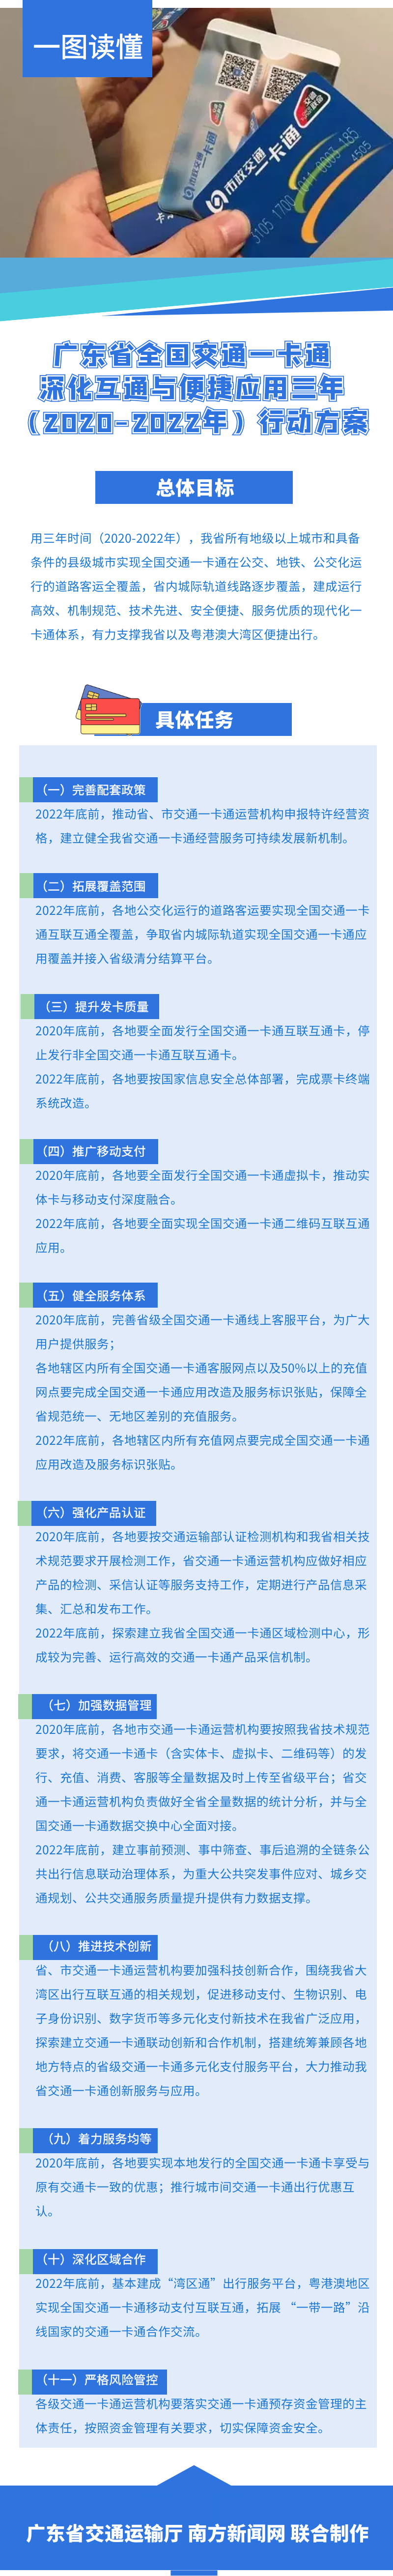 广东省全国交通一卡通深化互通与便捷应用三年行动方案.png